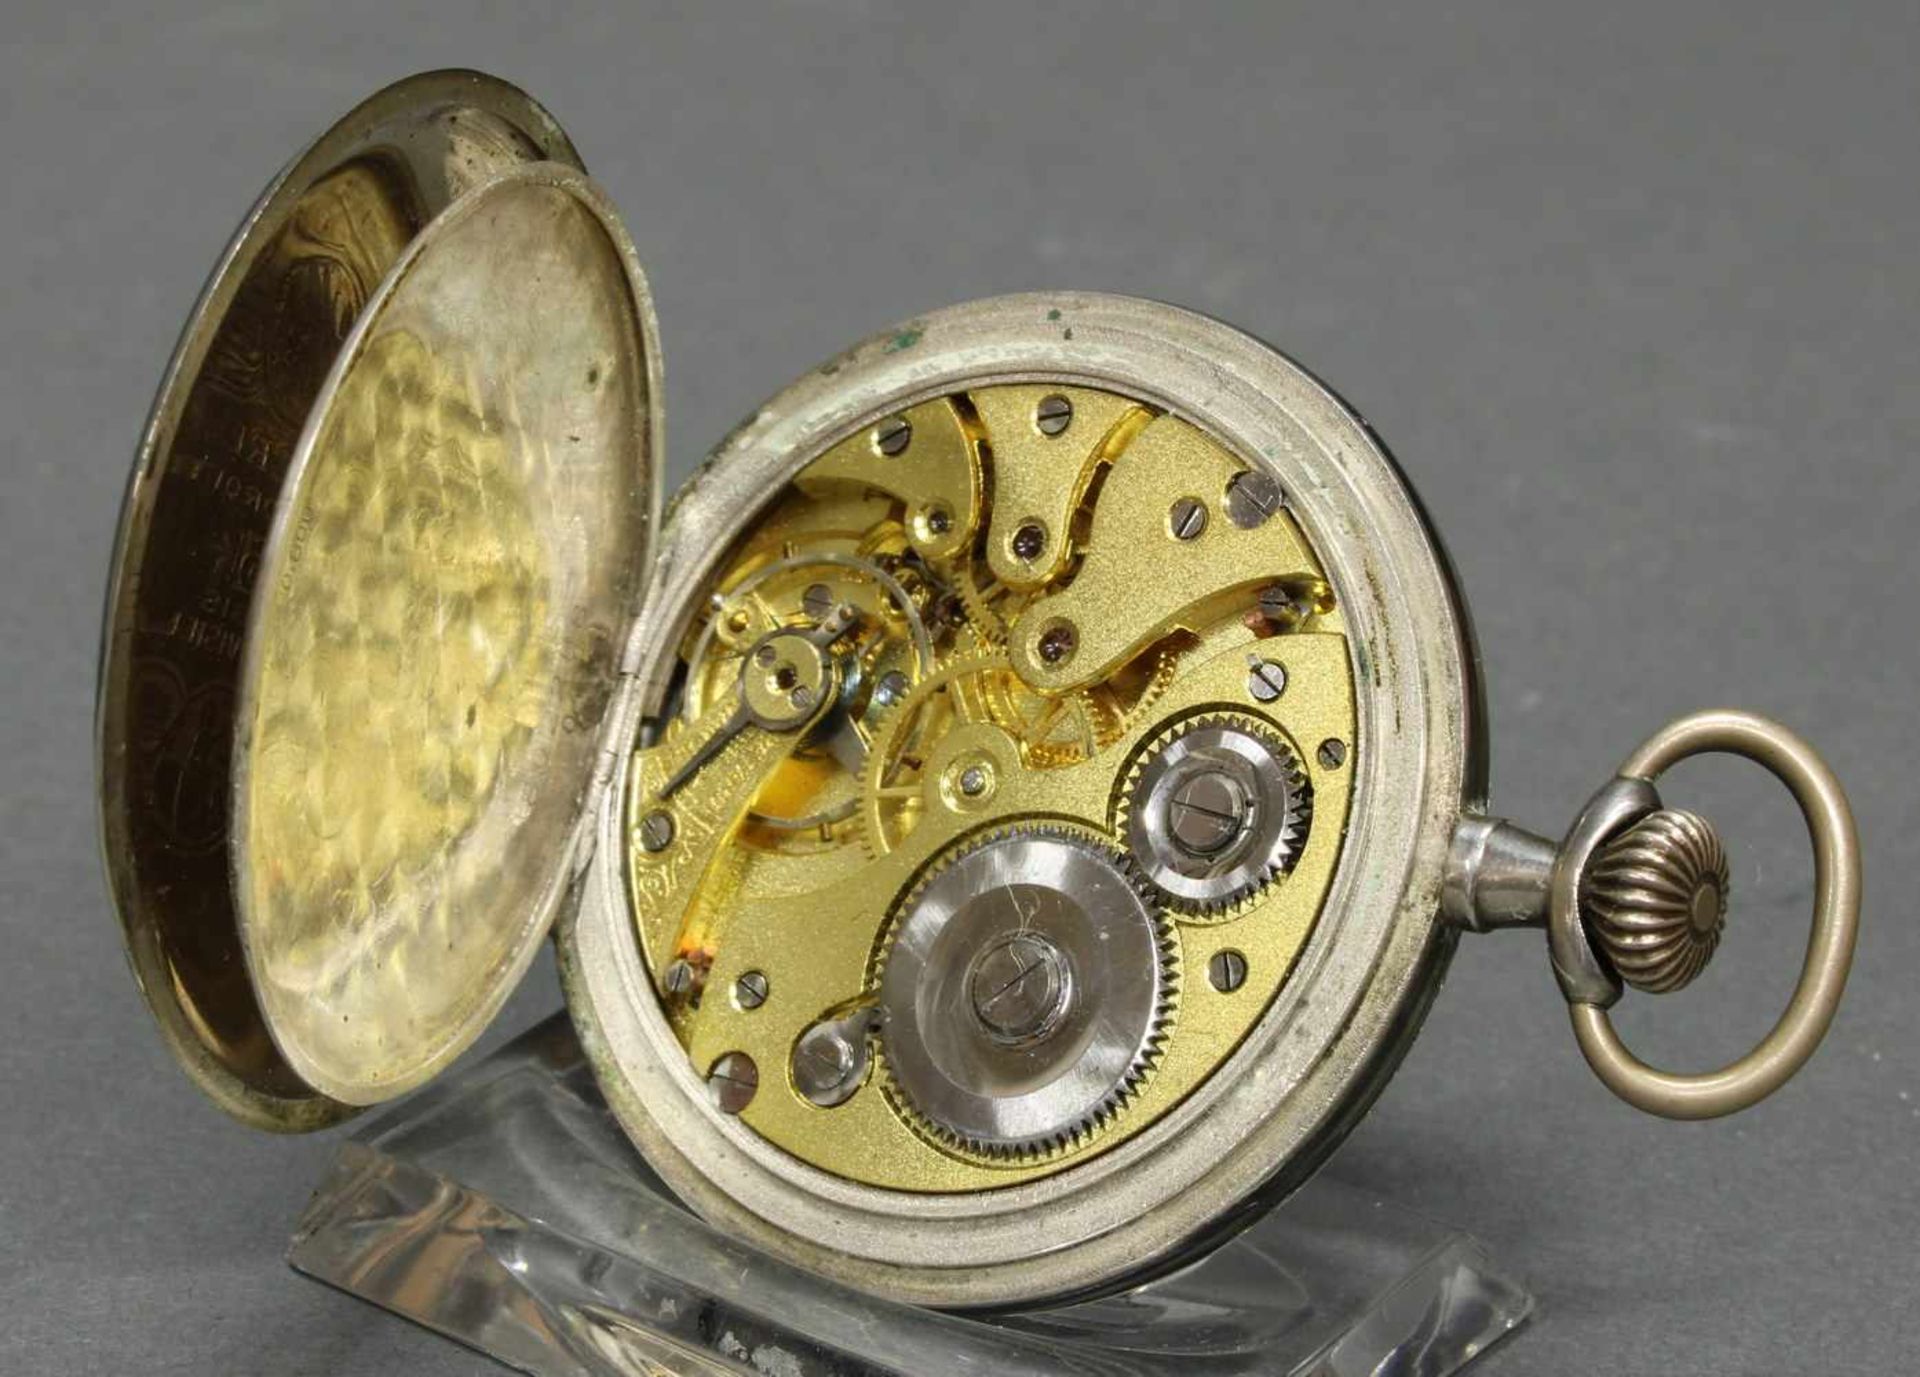 Herrentaschenuhr, Savonette, Silber 800 und Niello, silberfarbenes Zifferblatt, bez. Chronometre - Bild 8 aus 8